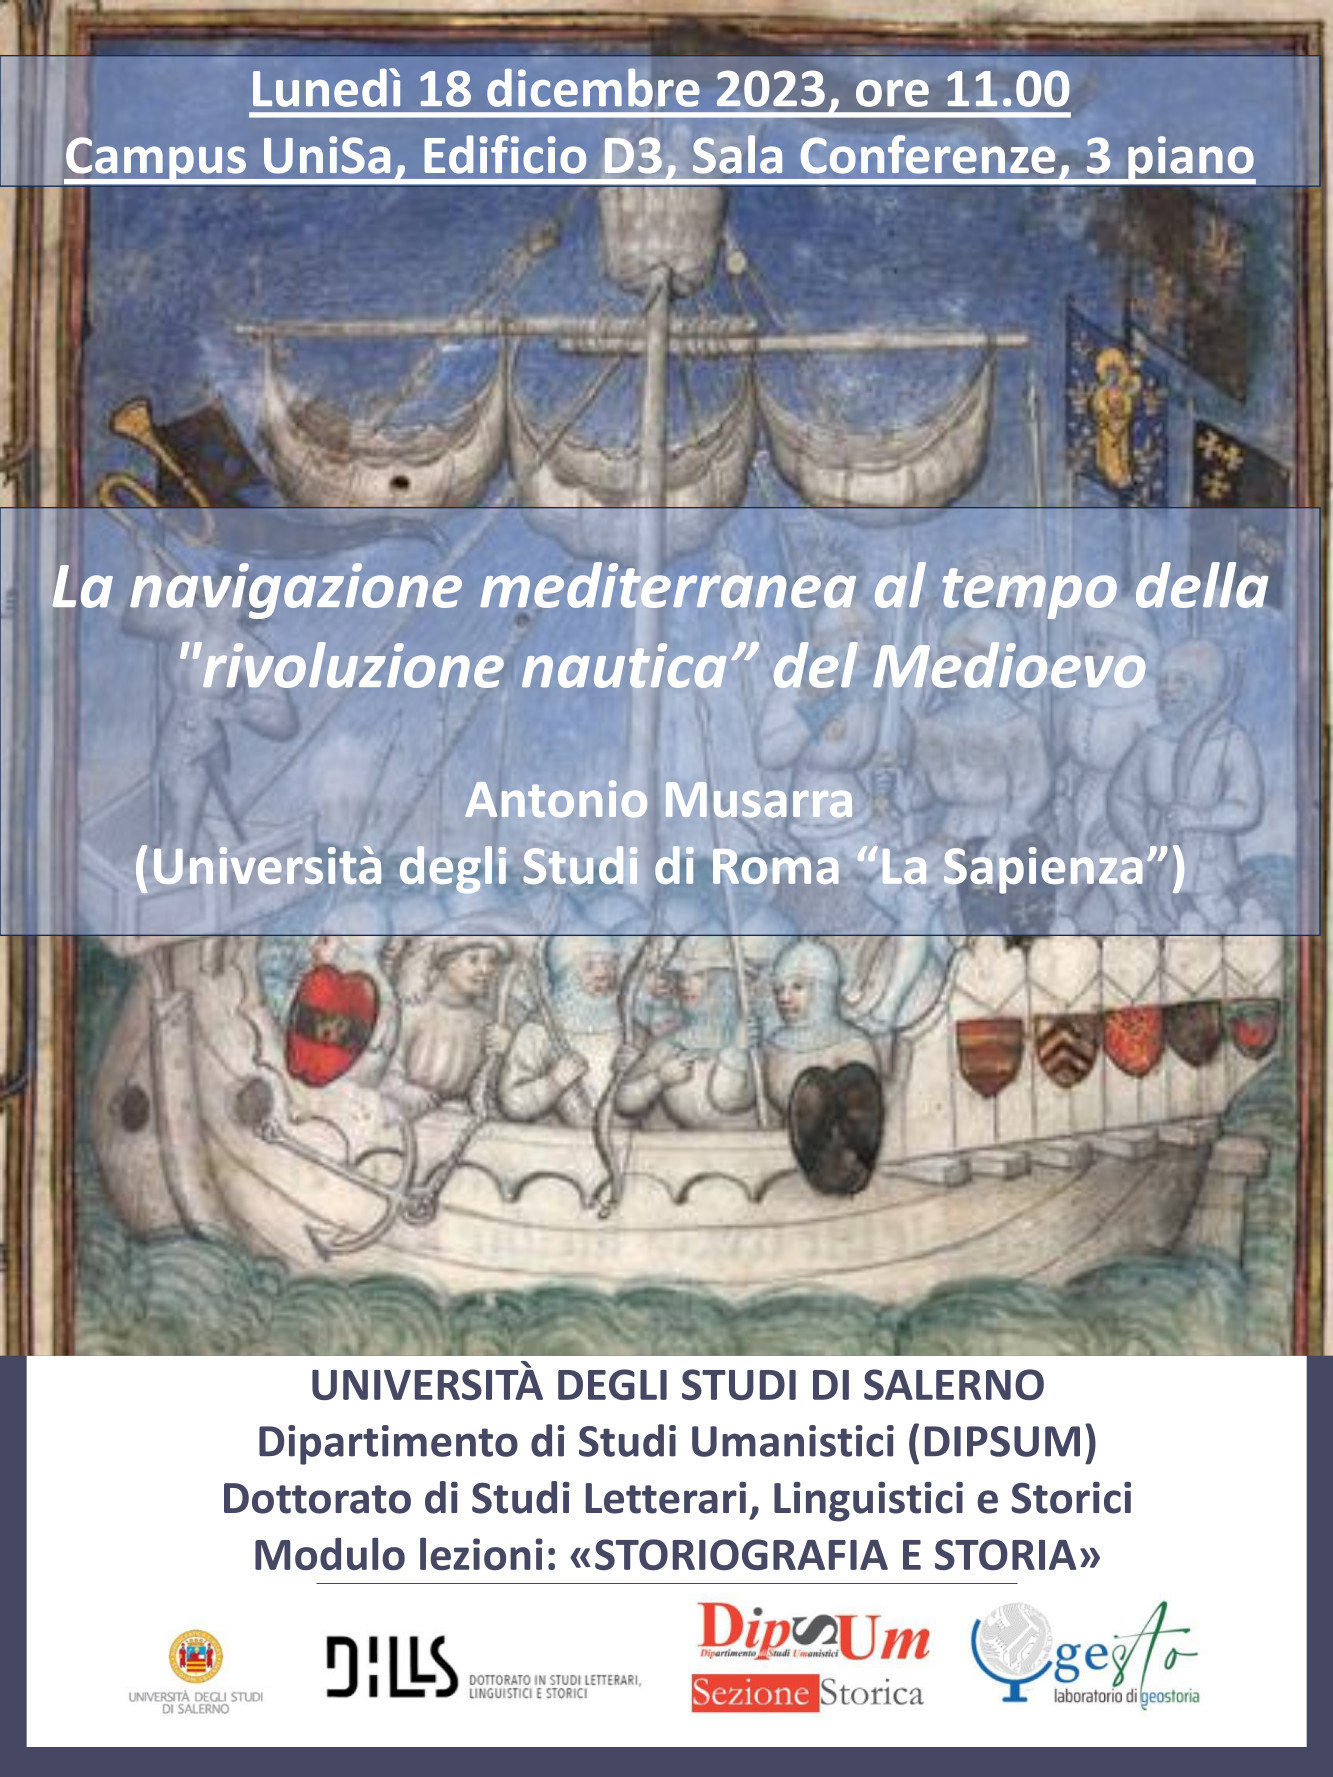 La navigazione mediterranea al tempo della "rivoluzione nautica” del Medioevo